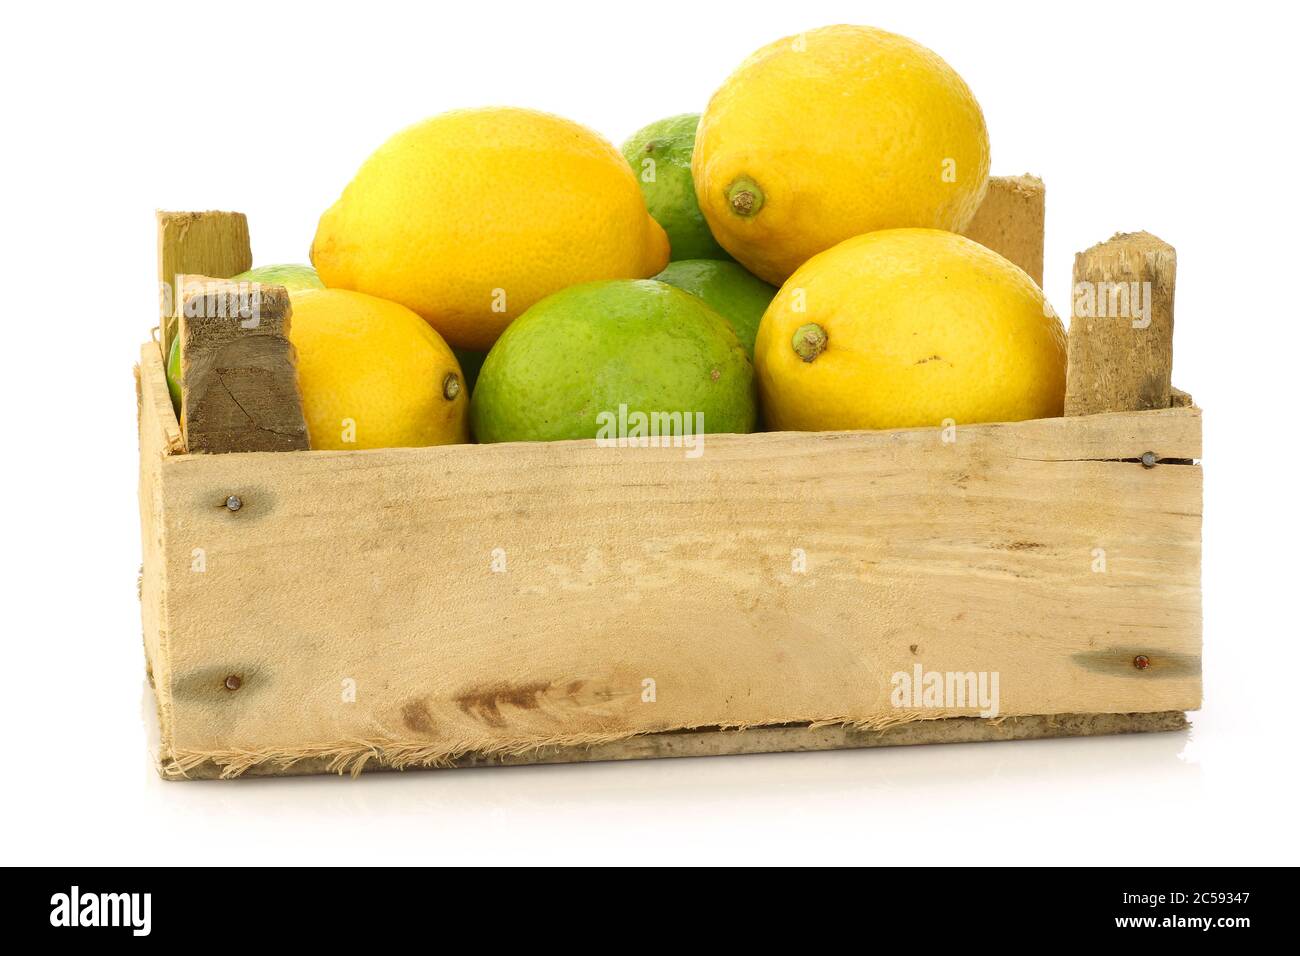 citrons frais et fruits au citron vert dans une boîte en bois sur fond blanc Banque D'Images